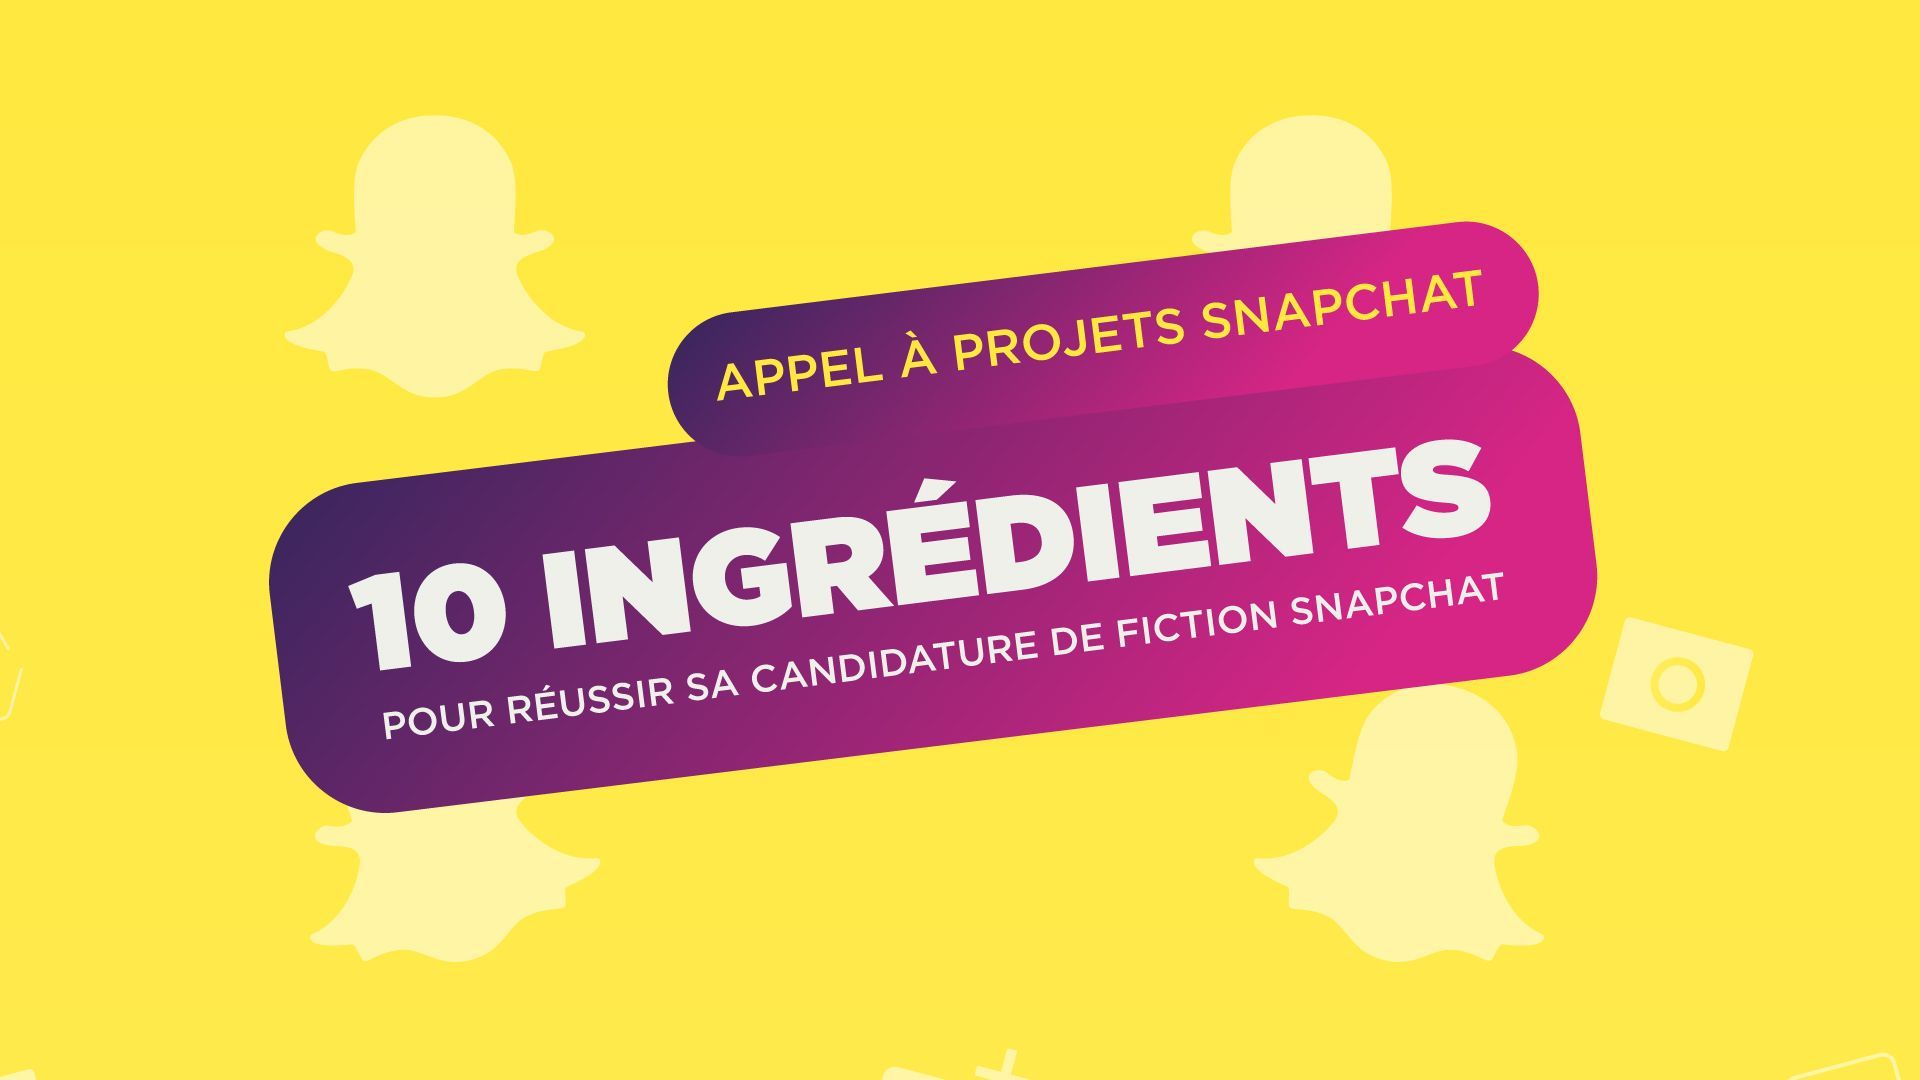 10 ingrédients pour réussir sa candidature de fiction Snapchat